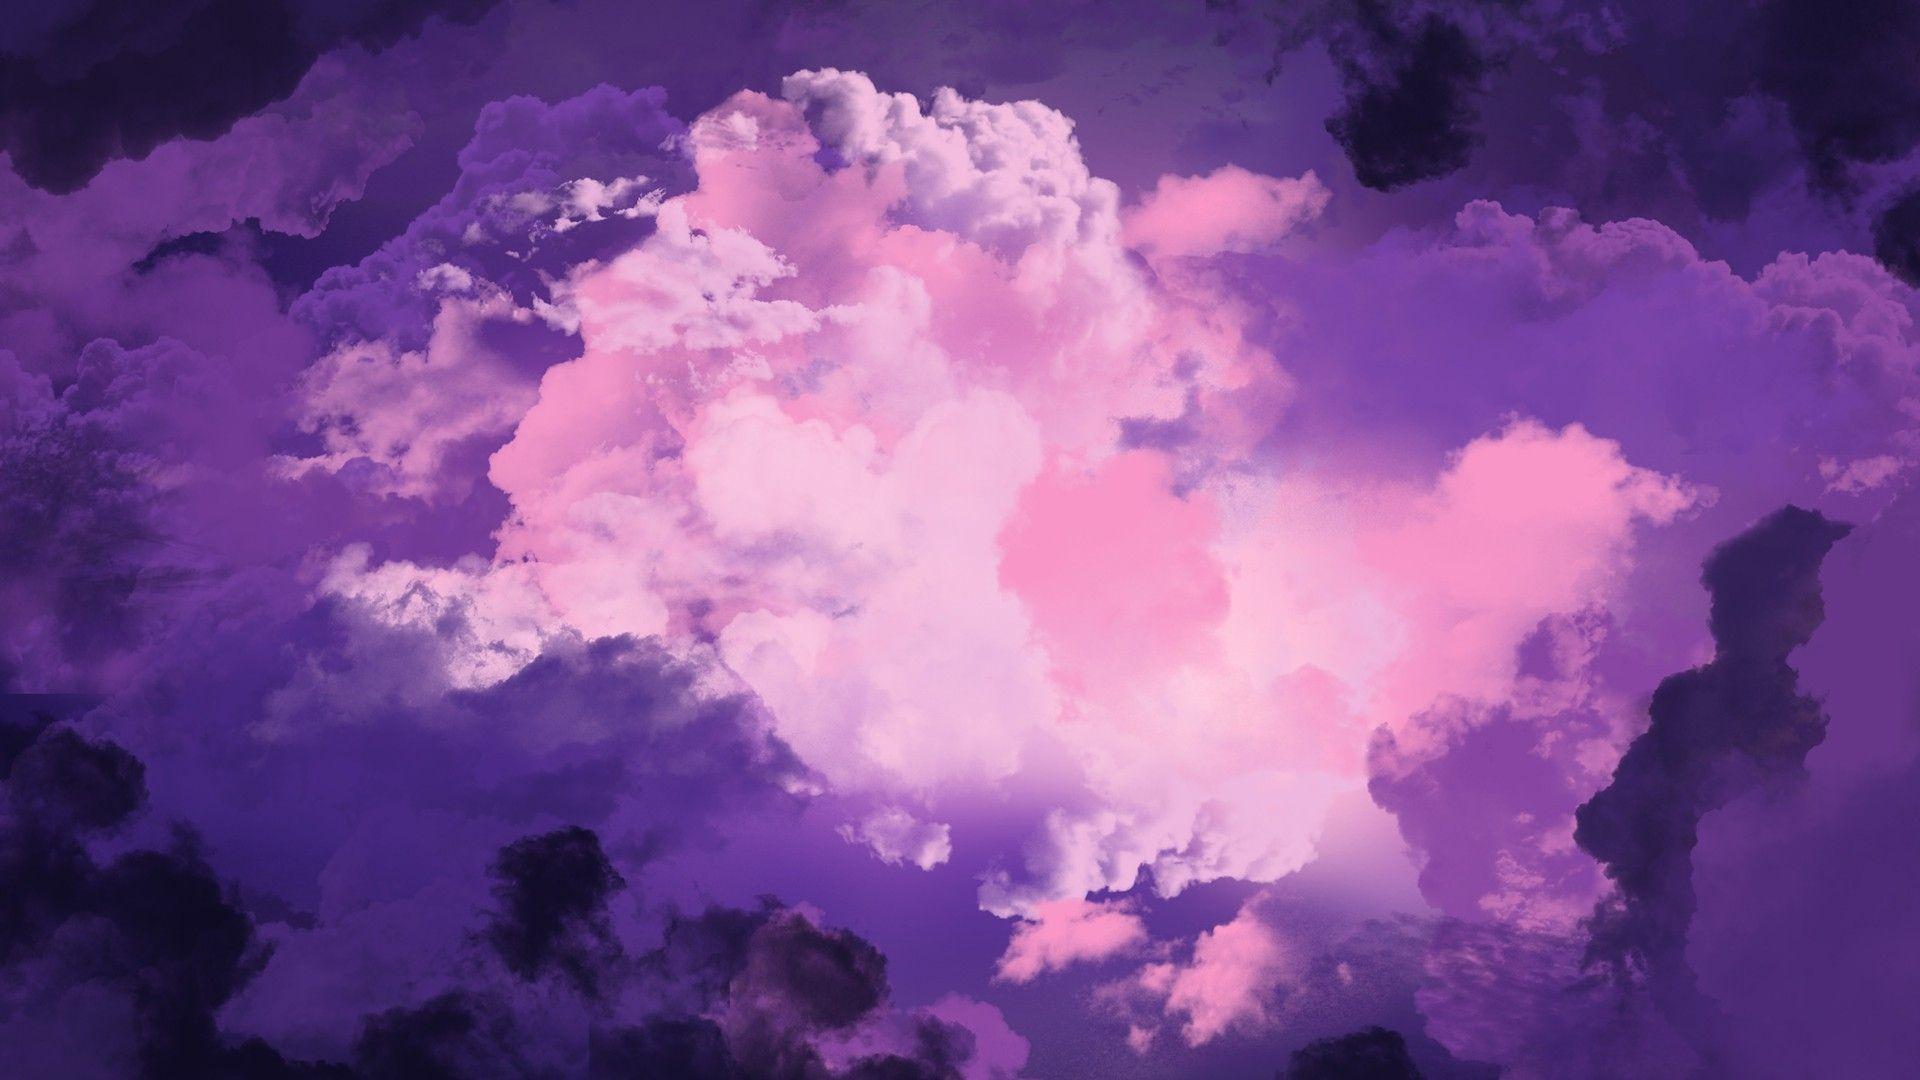 Download Wallpaper, Download 1680x1050 clouds storm artwork vibrant